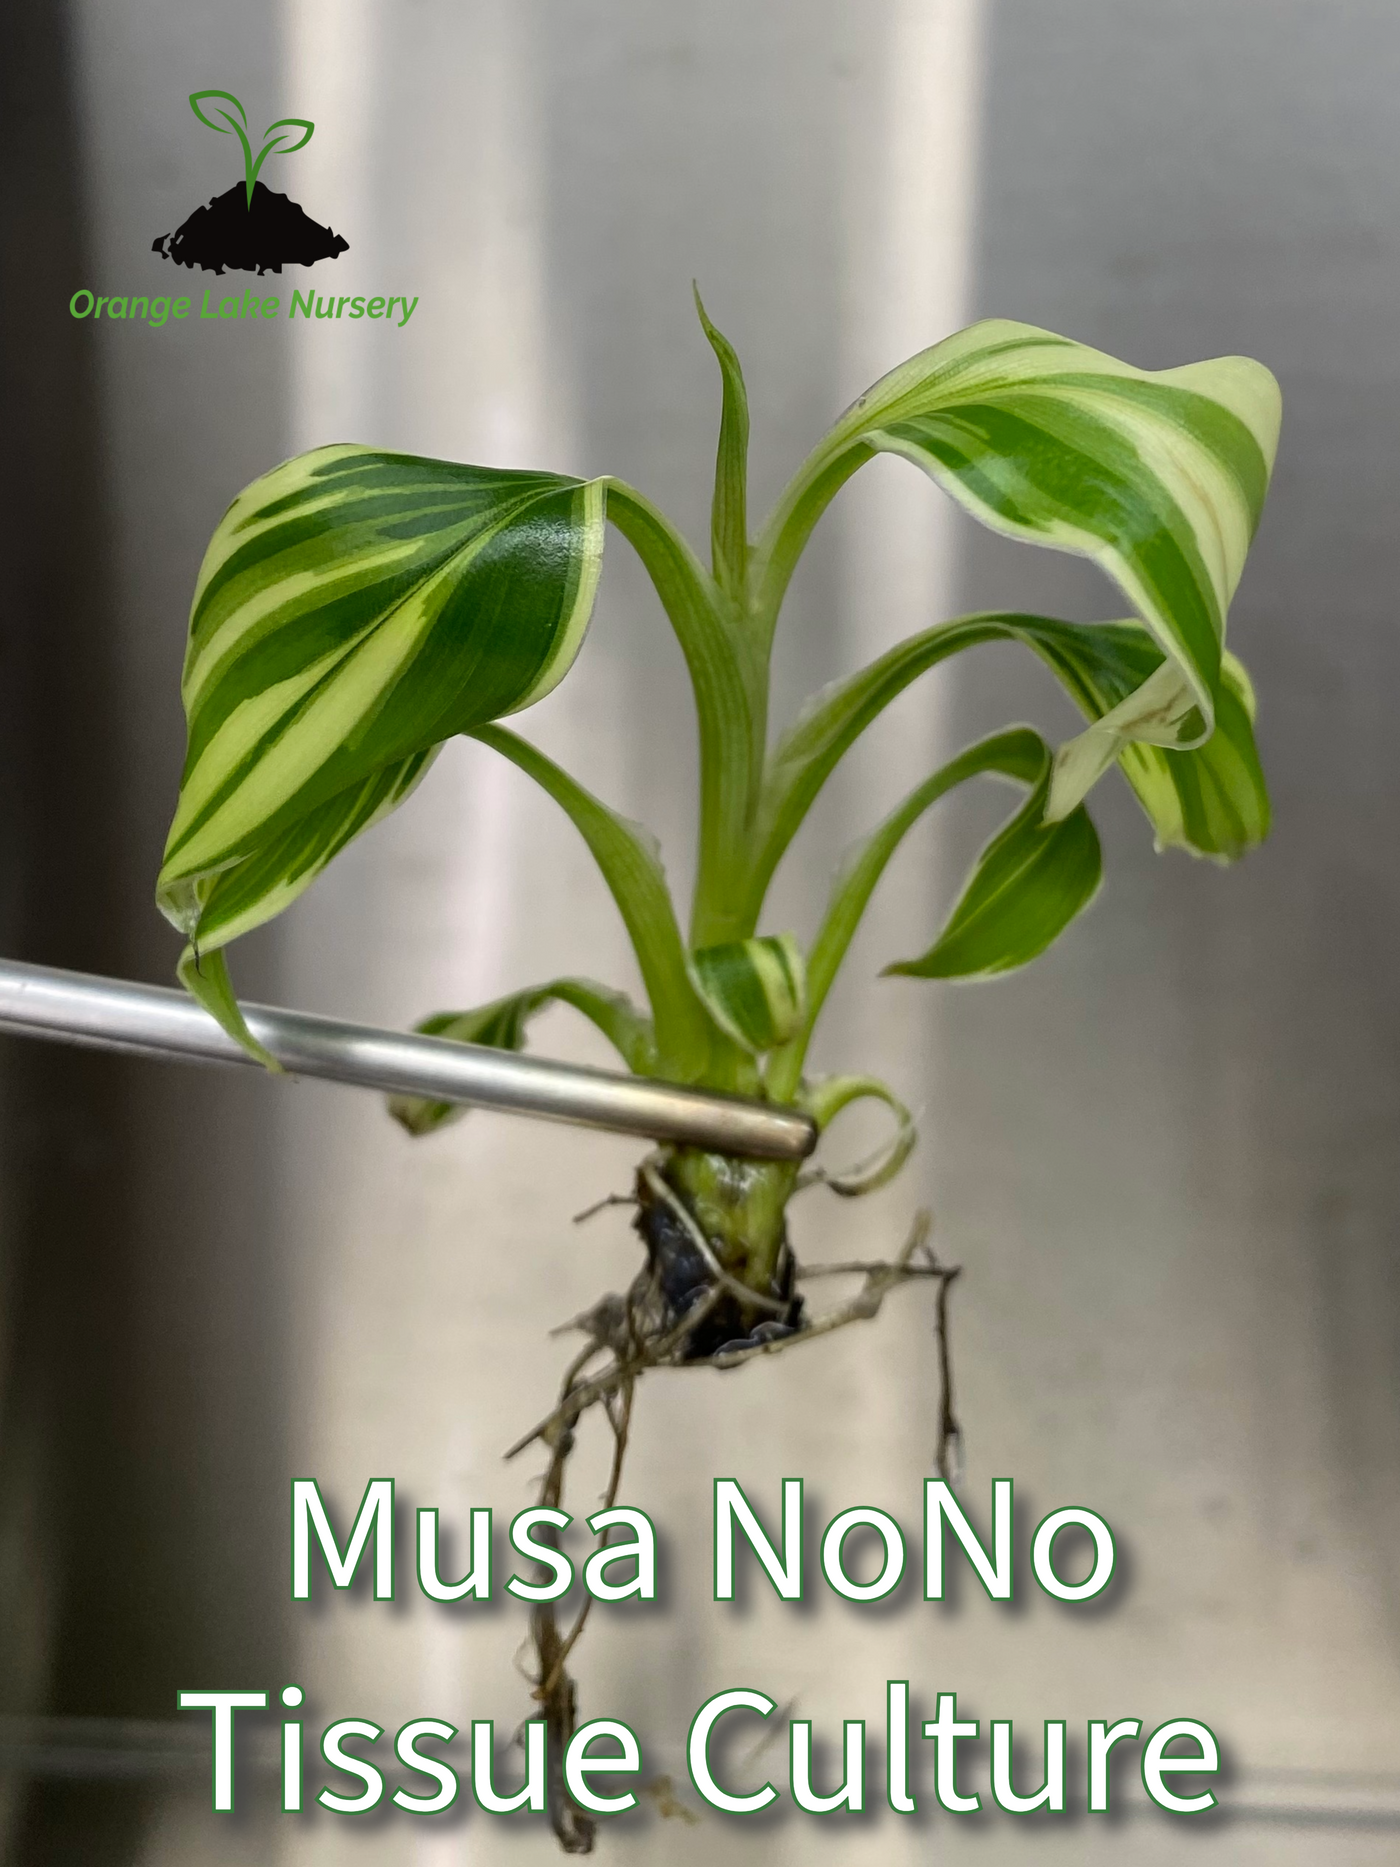 Musa "Nono" - Pink Variegated Banana Plantlet (1)